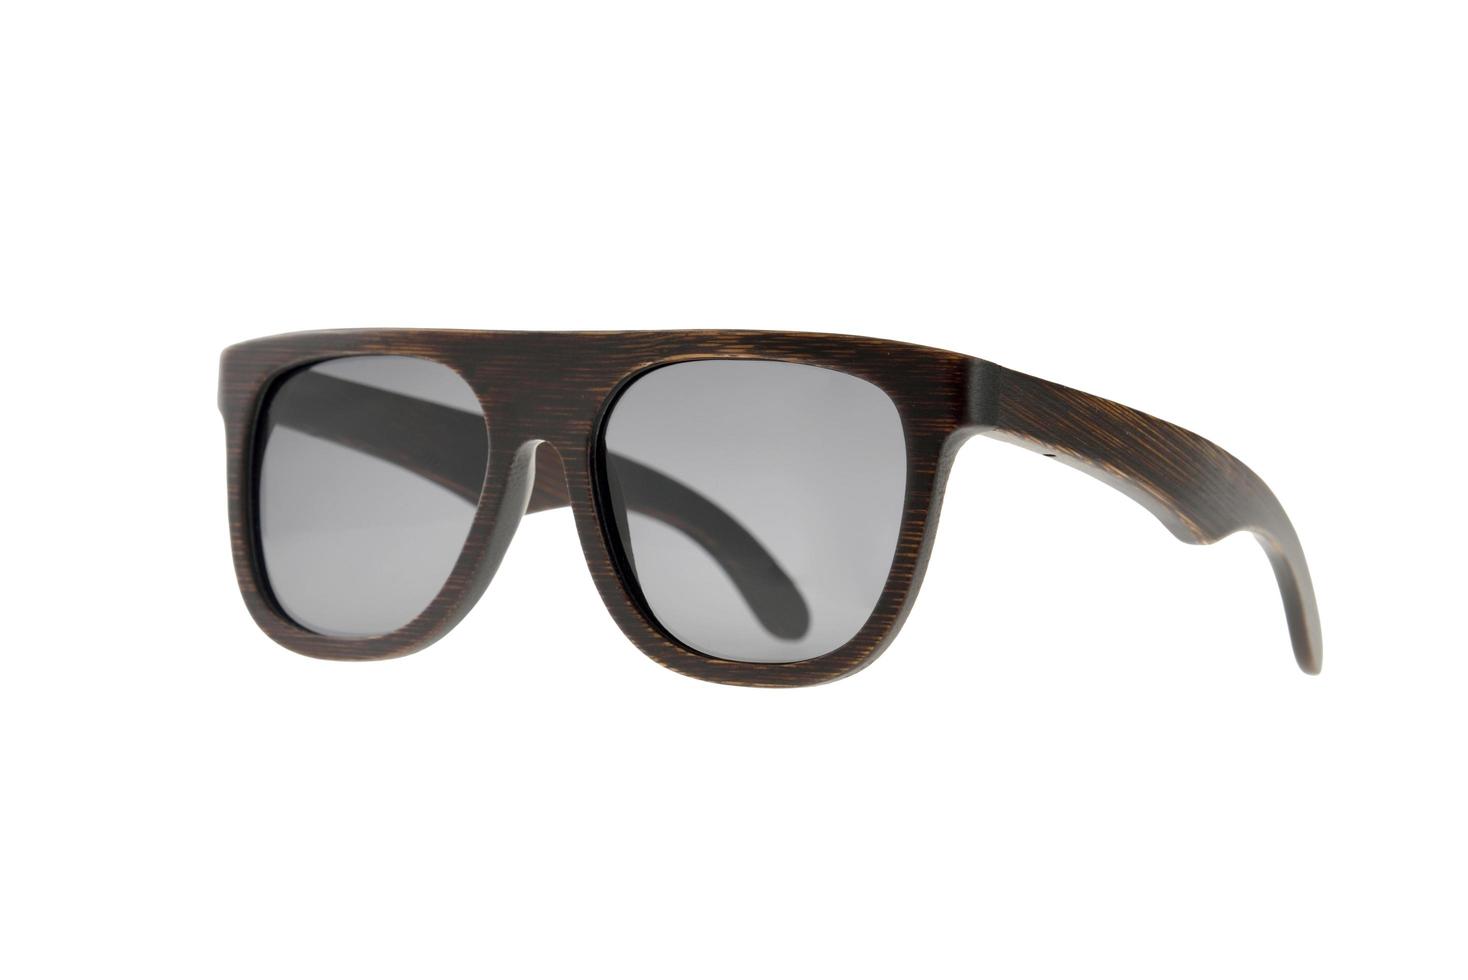 Square wooden sunglasses photo